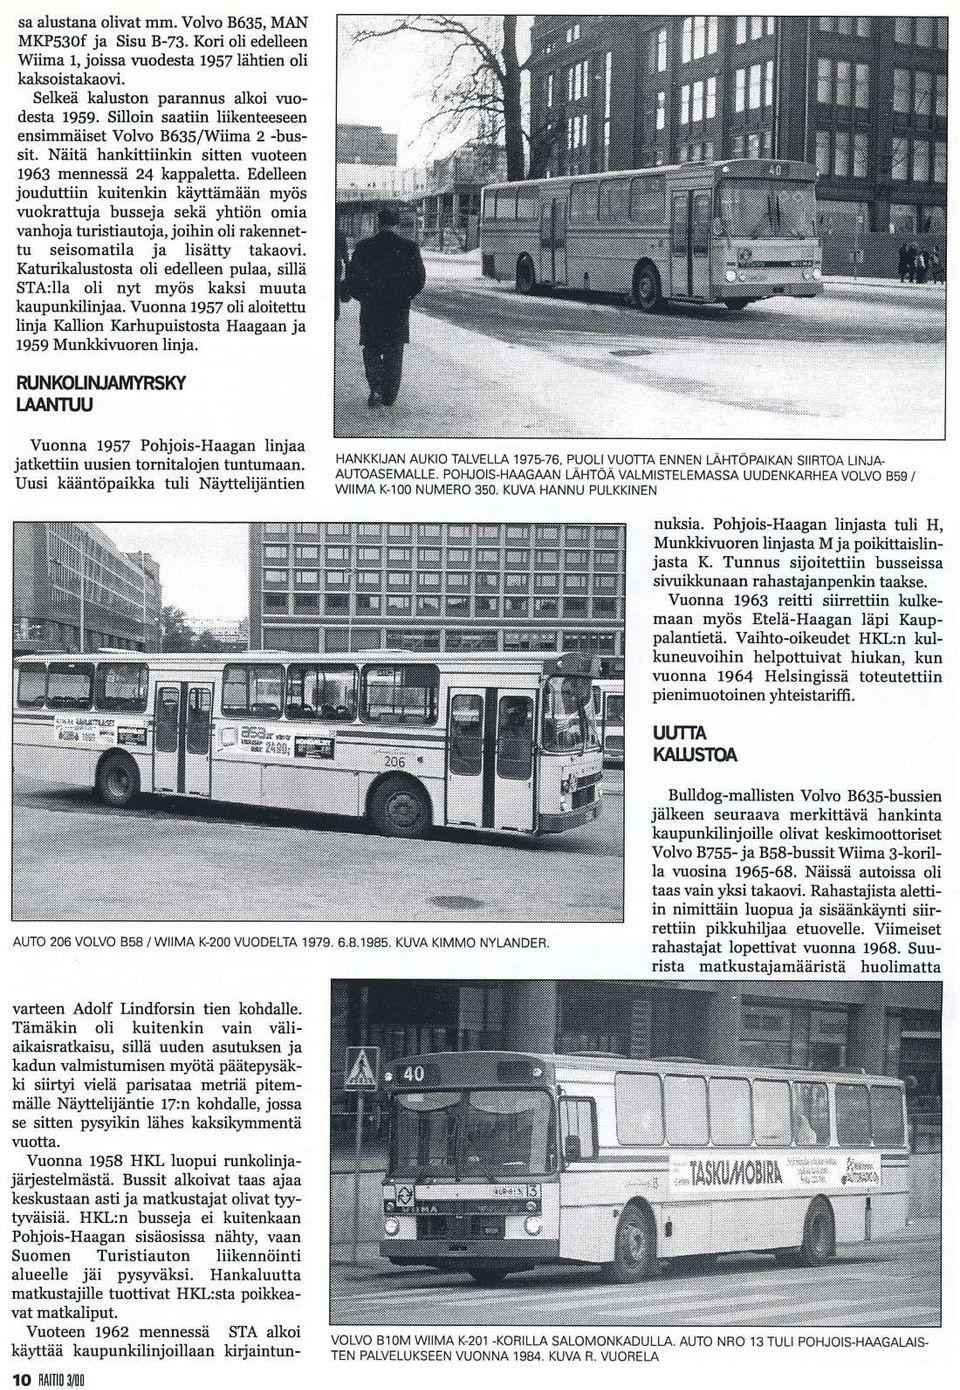 Edeleen jouduttiin kuitenlin k;ilttäm in myös wokrattujå busseja sekå yhtiön omia vanloja turiätiautoja, joihin oli ElenDettu seisomatila ia lisätty takaovi.